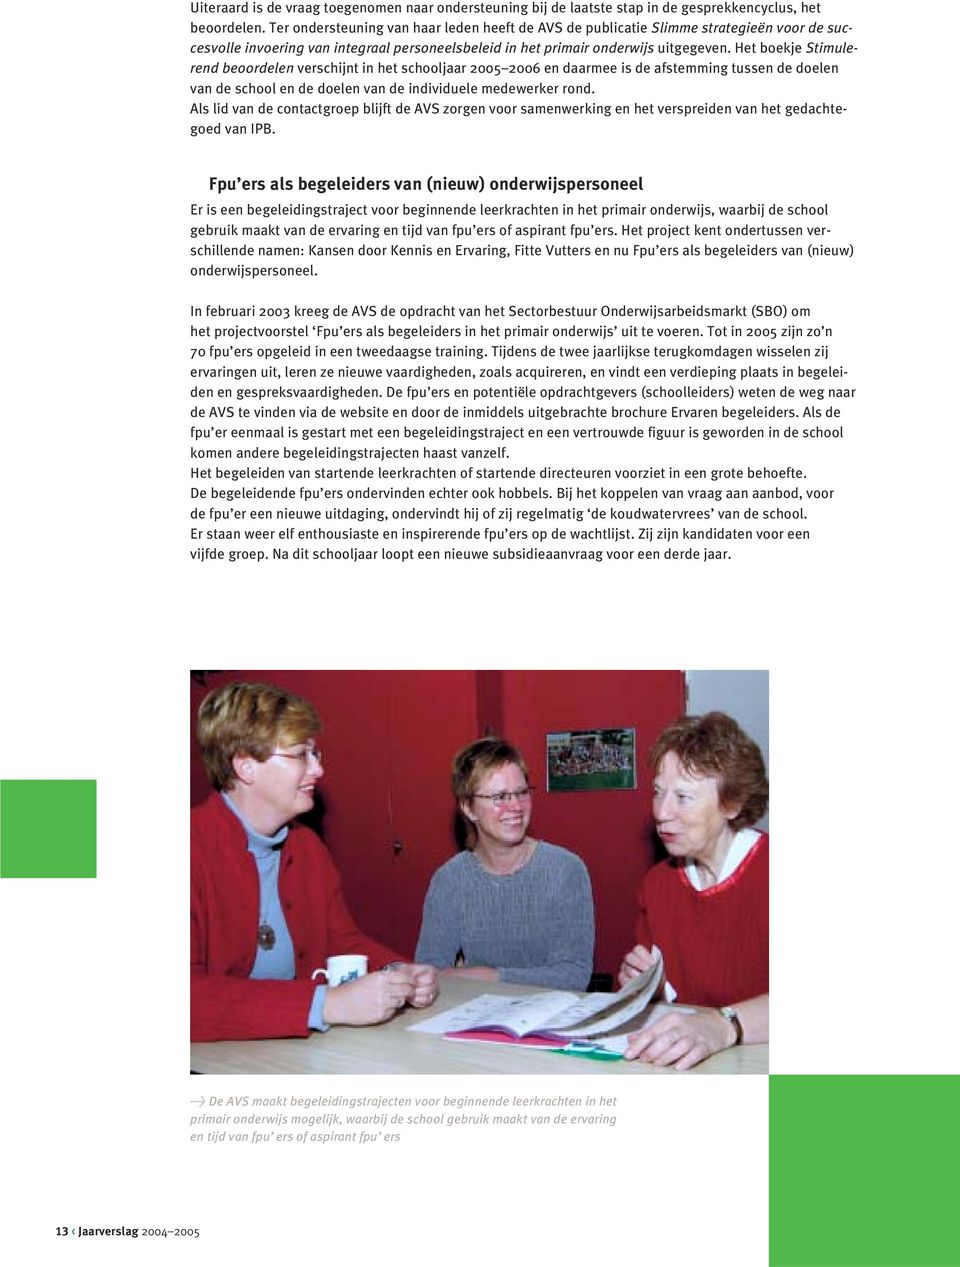 Het boekje Stimulerend beoordelen verschijnt in het schooljaar 2005 2006 en daarmee is de afstemming tussen de doelen van de school en de doelen van de individuele medewerker rond.